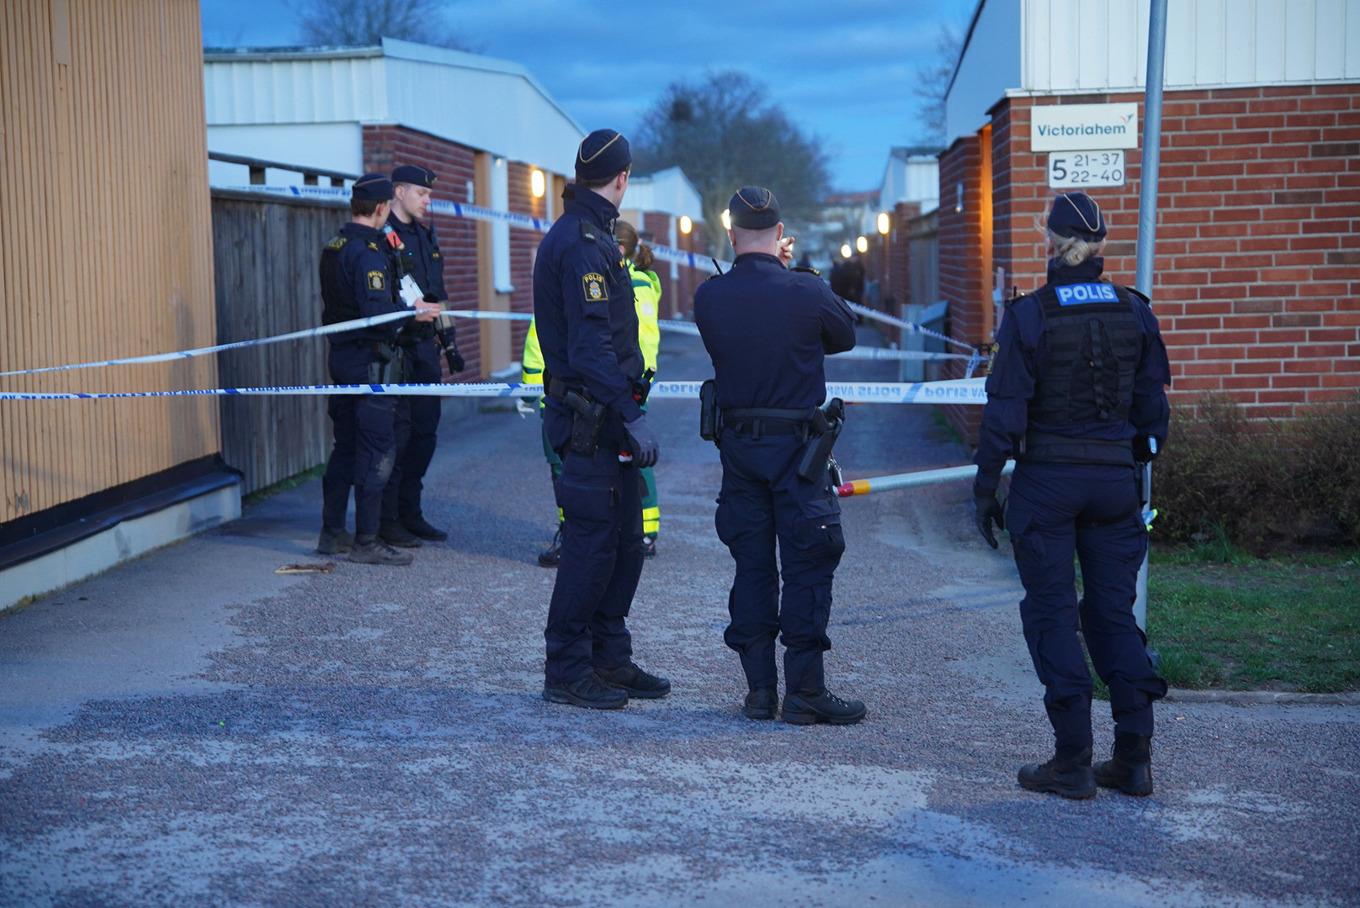 Polis och ambulanspersonal efter skjutningen i Navestad i Norrköping. Foto: Niklas Luks/TT